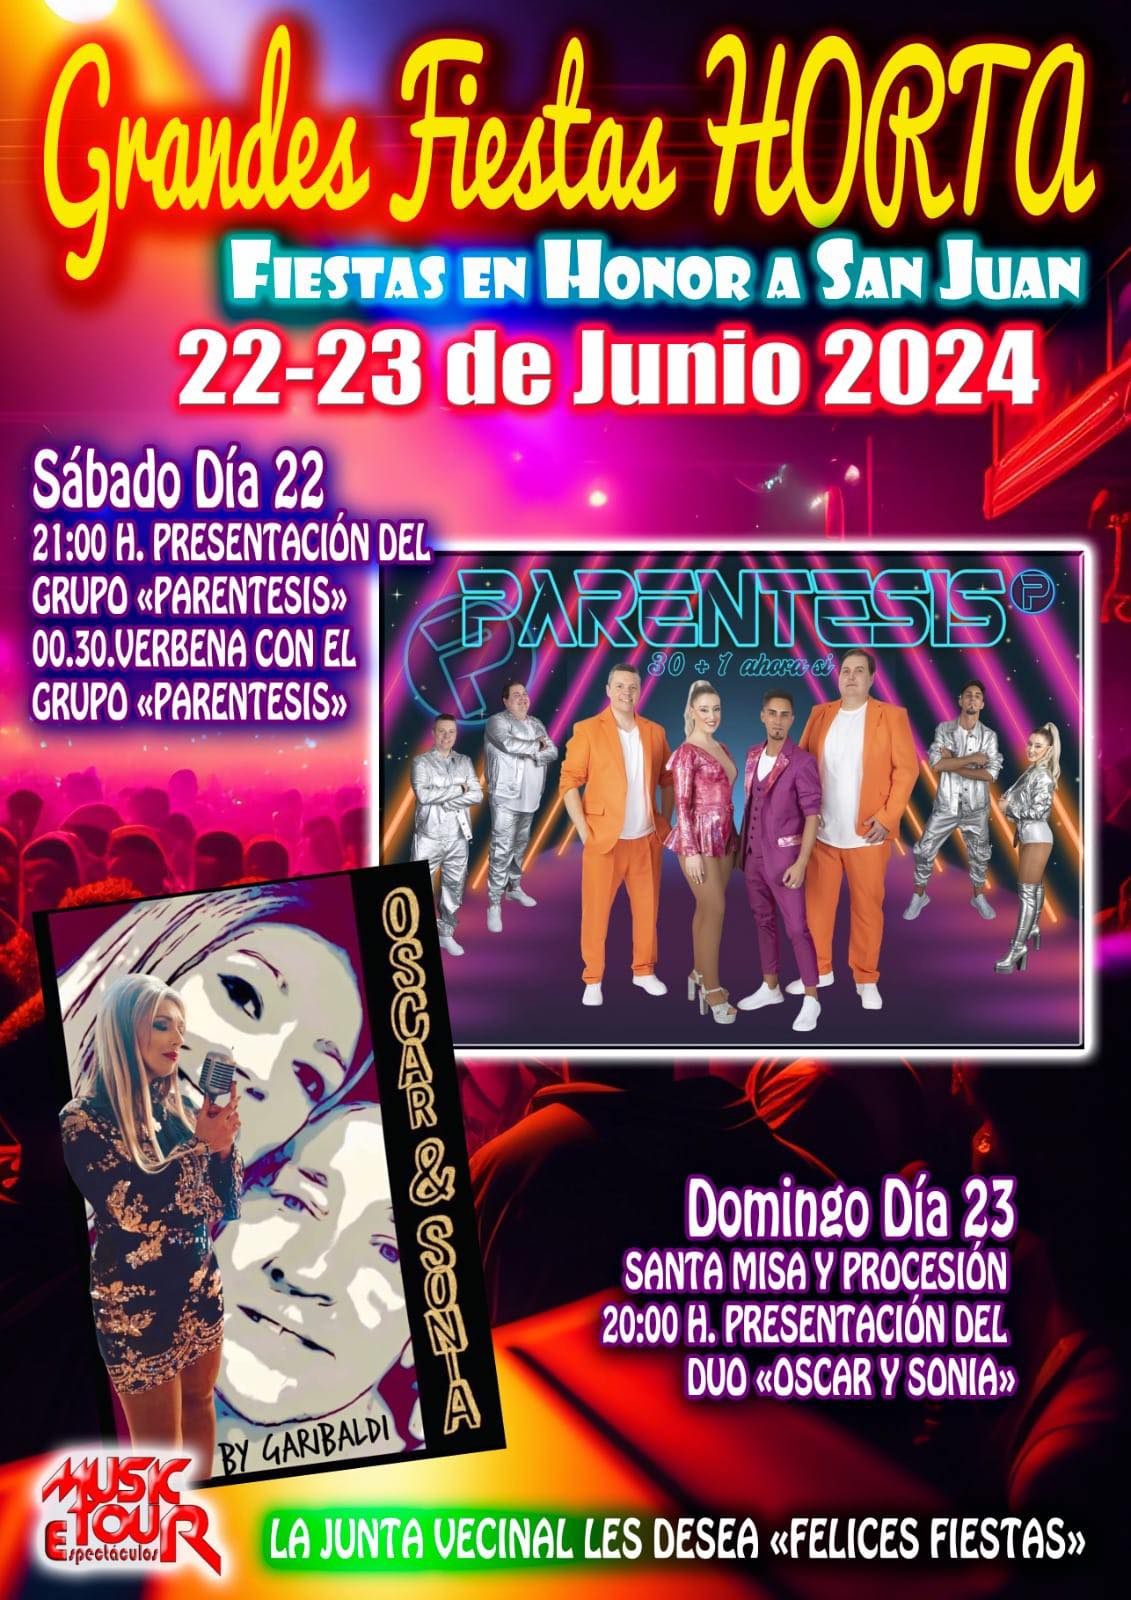 Grandes Fiestas en Horta en honor a San Juan los días 22 y 23 de junio 2024 2